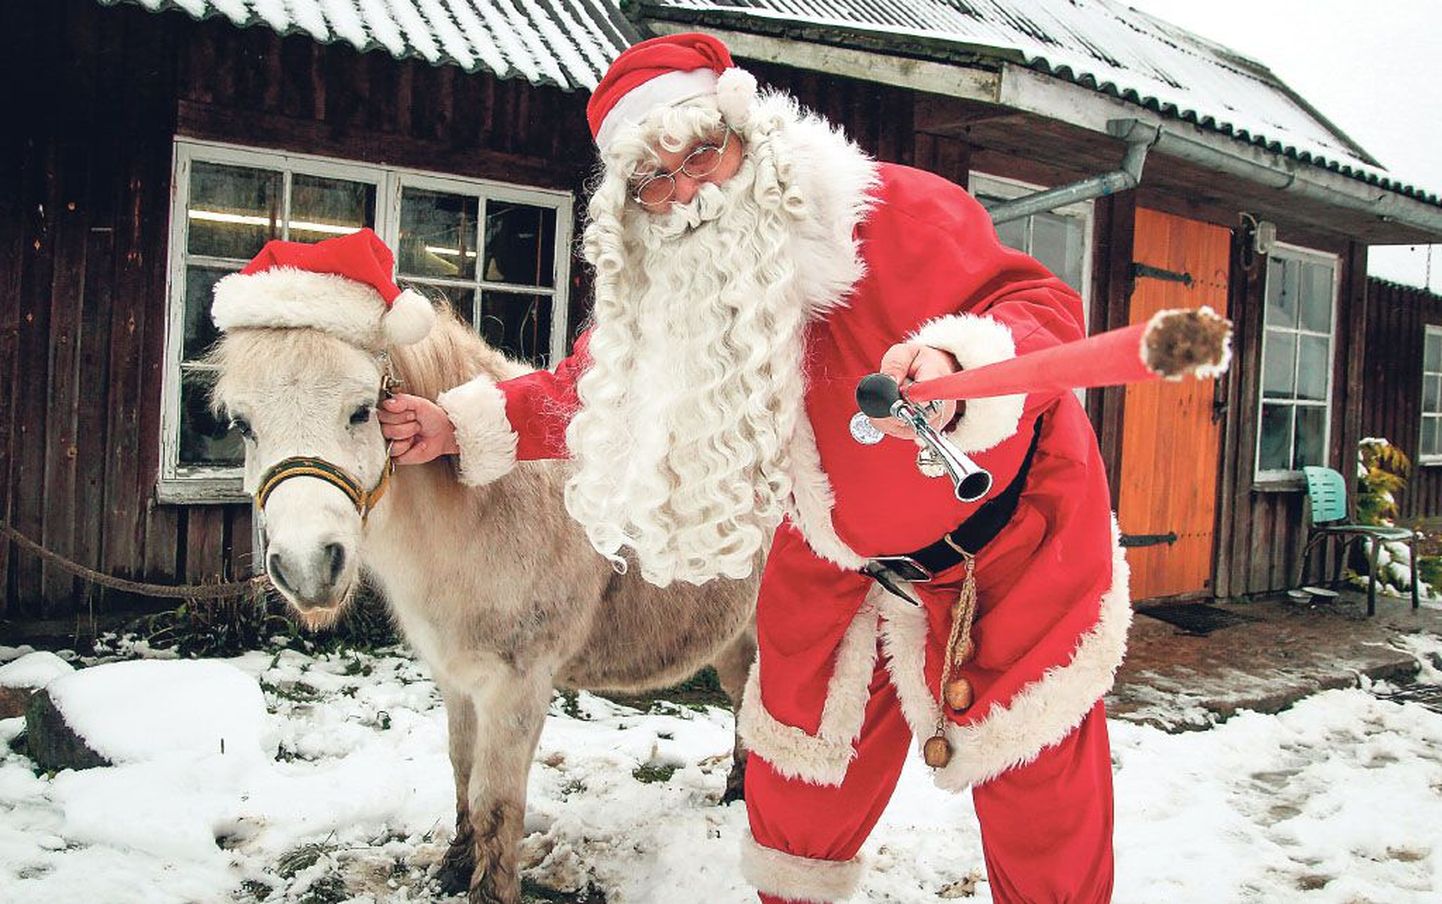 Jõuluvana Ärni ja poni Rubla ootavad kõiki väikseid ja suuri peagi Pärnumaale uudistama Eesti jõuluvanade aasta ringi tegutsevat keskust.